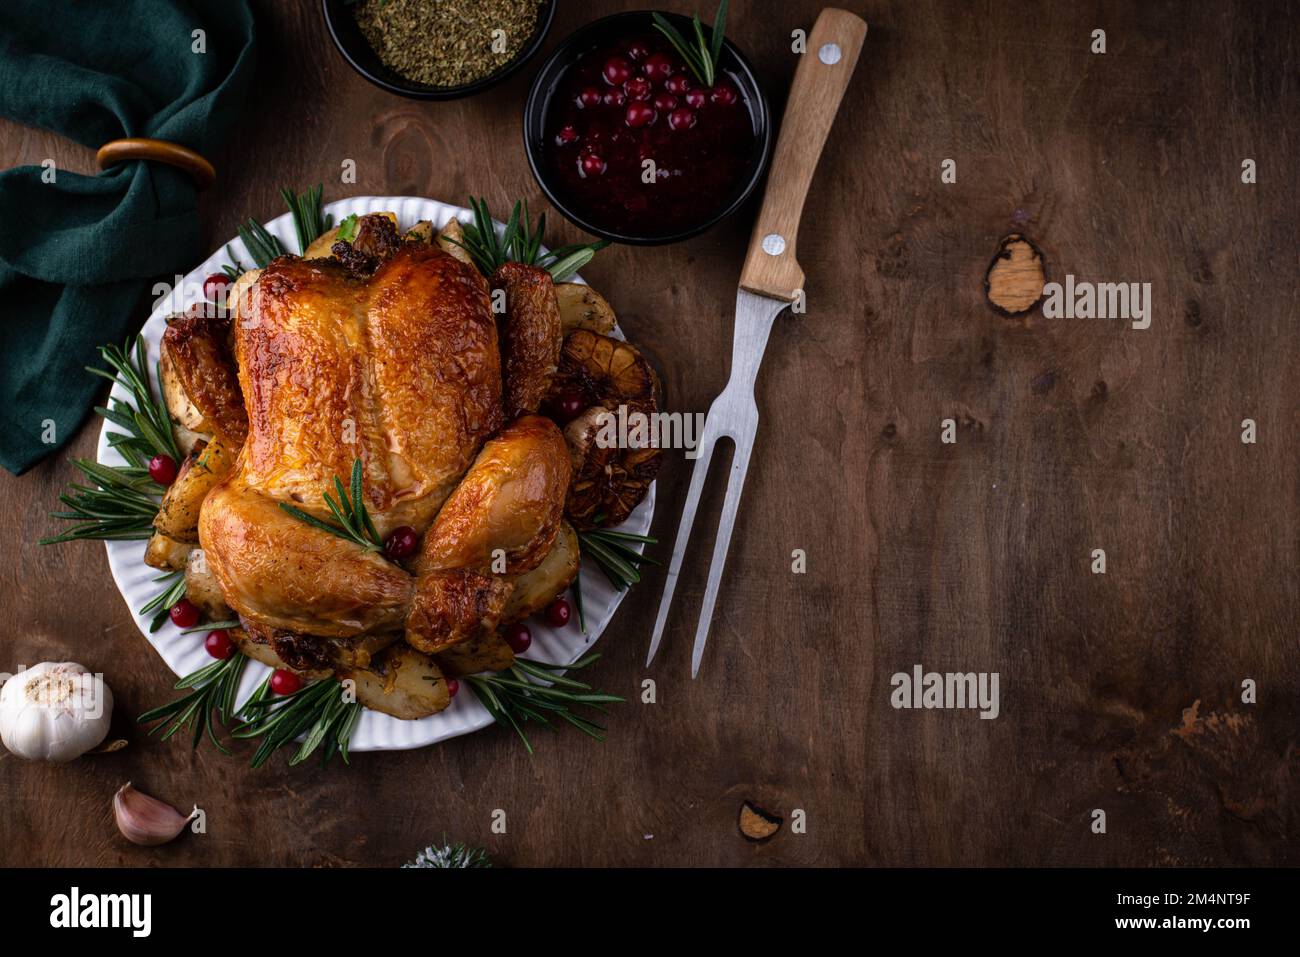 Christmas baked chicken for festive dinner Stock Photo - Alamy